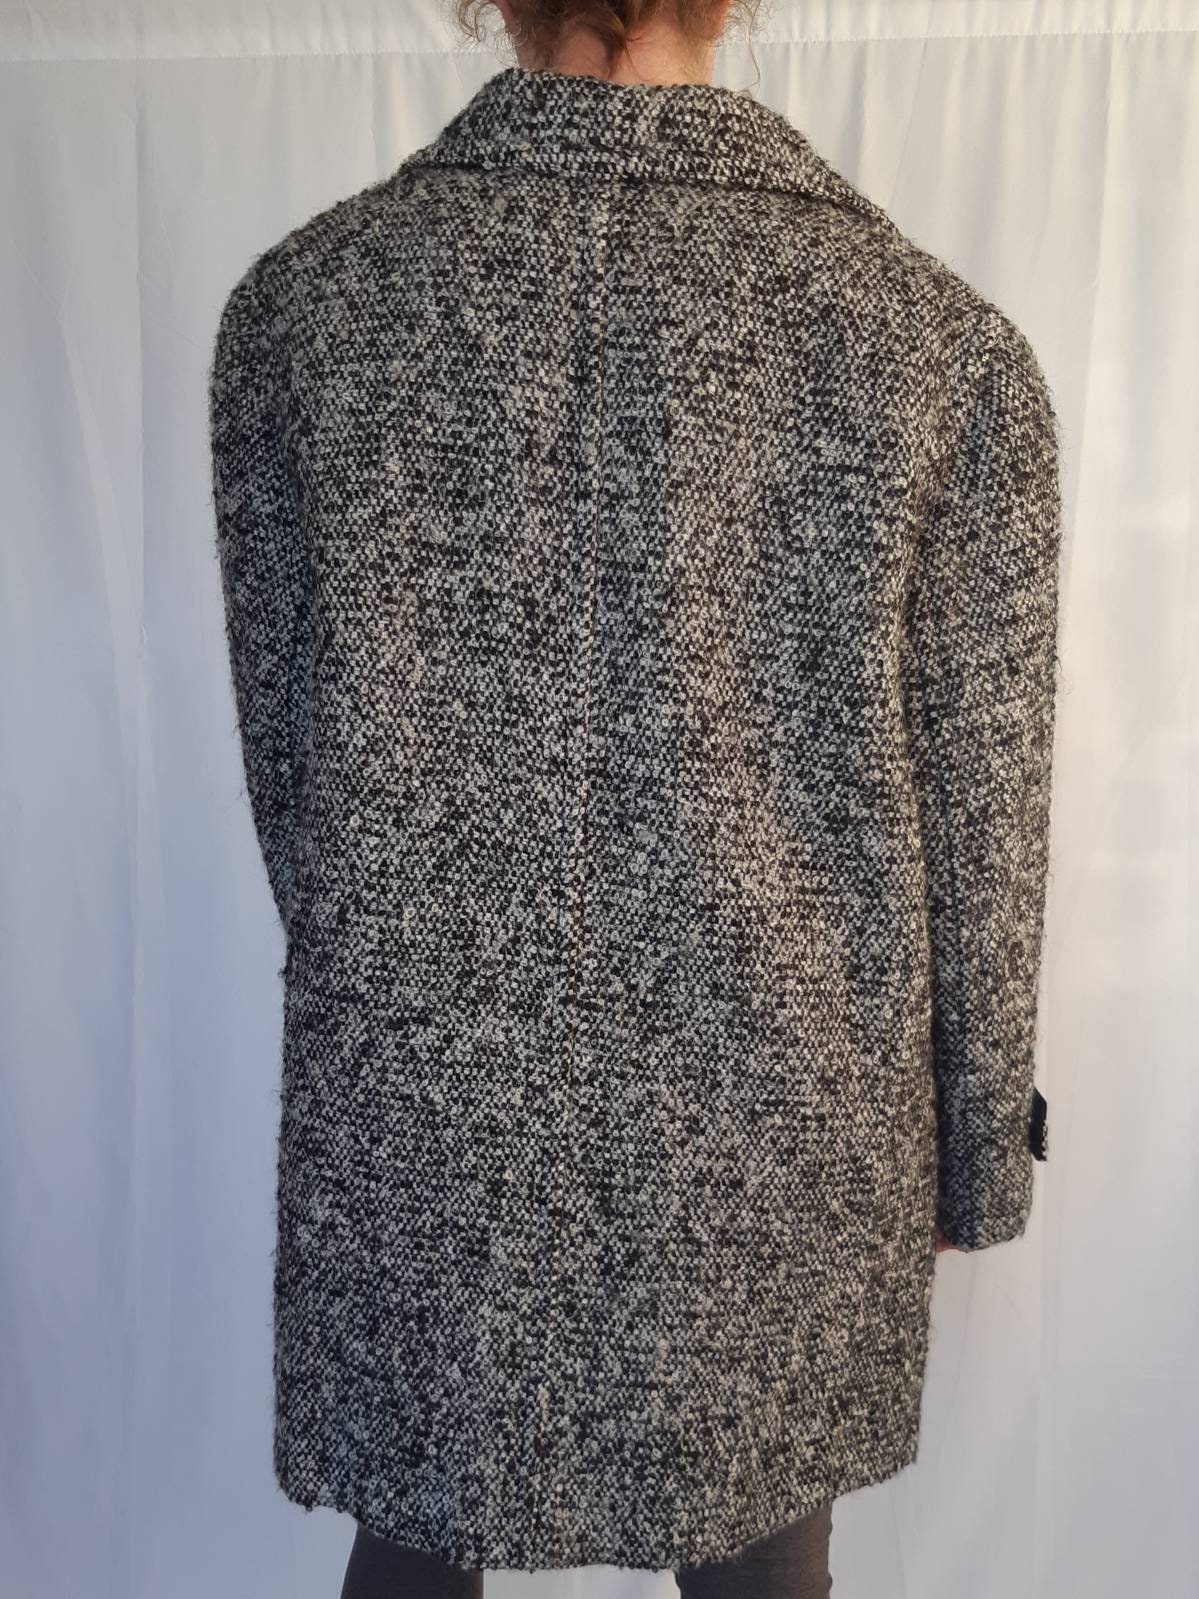 Tweed Wool Winter Coat Vintage Retro 1980's | Etsy